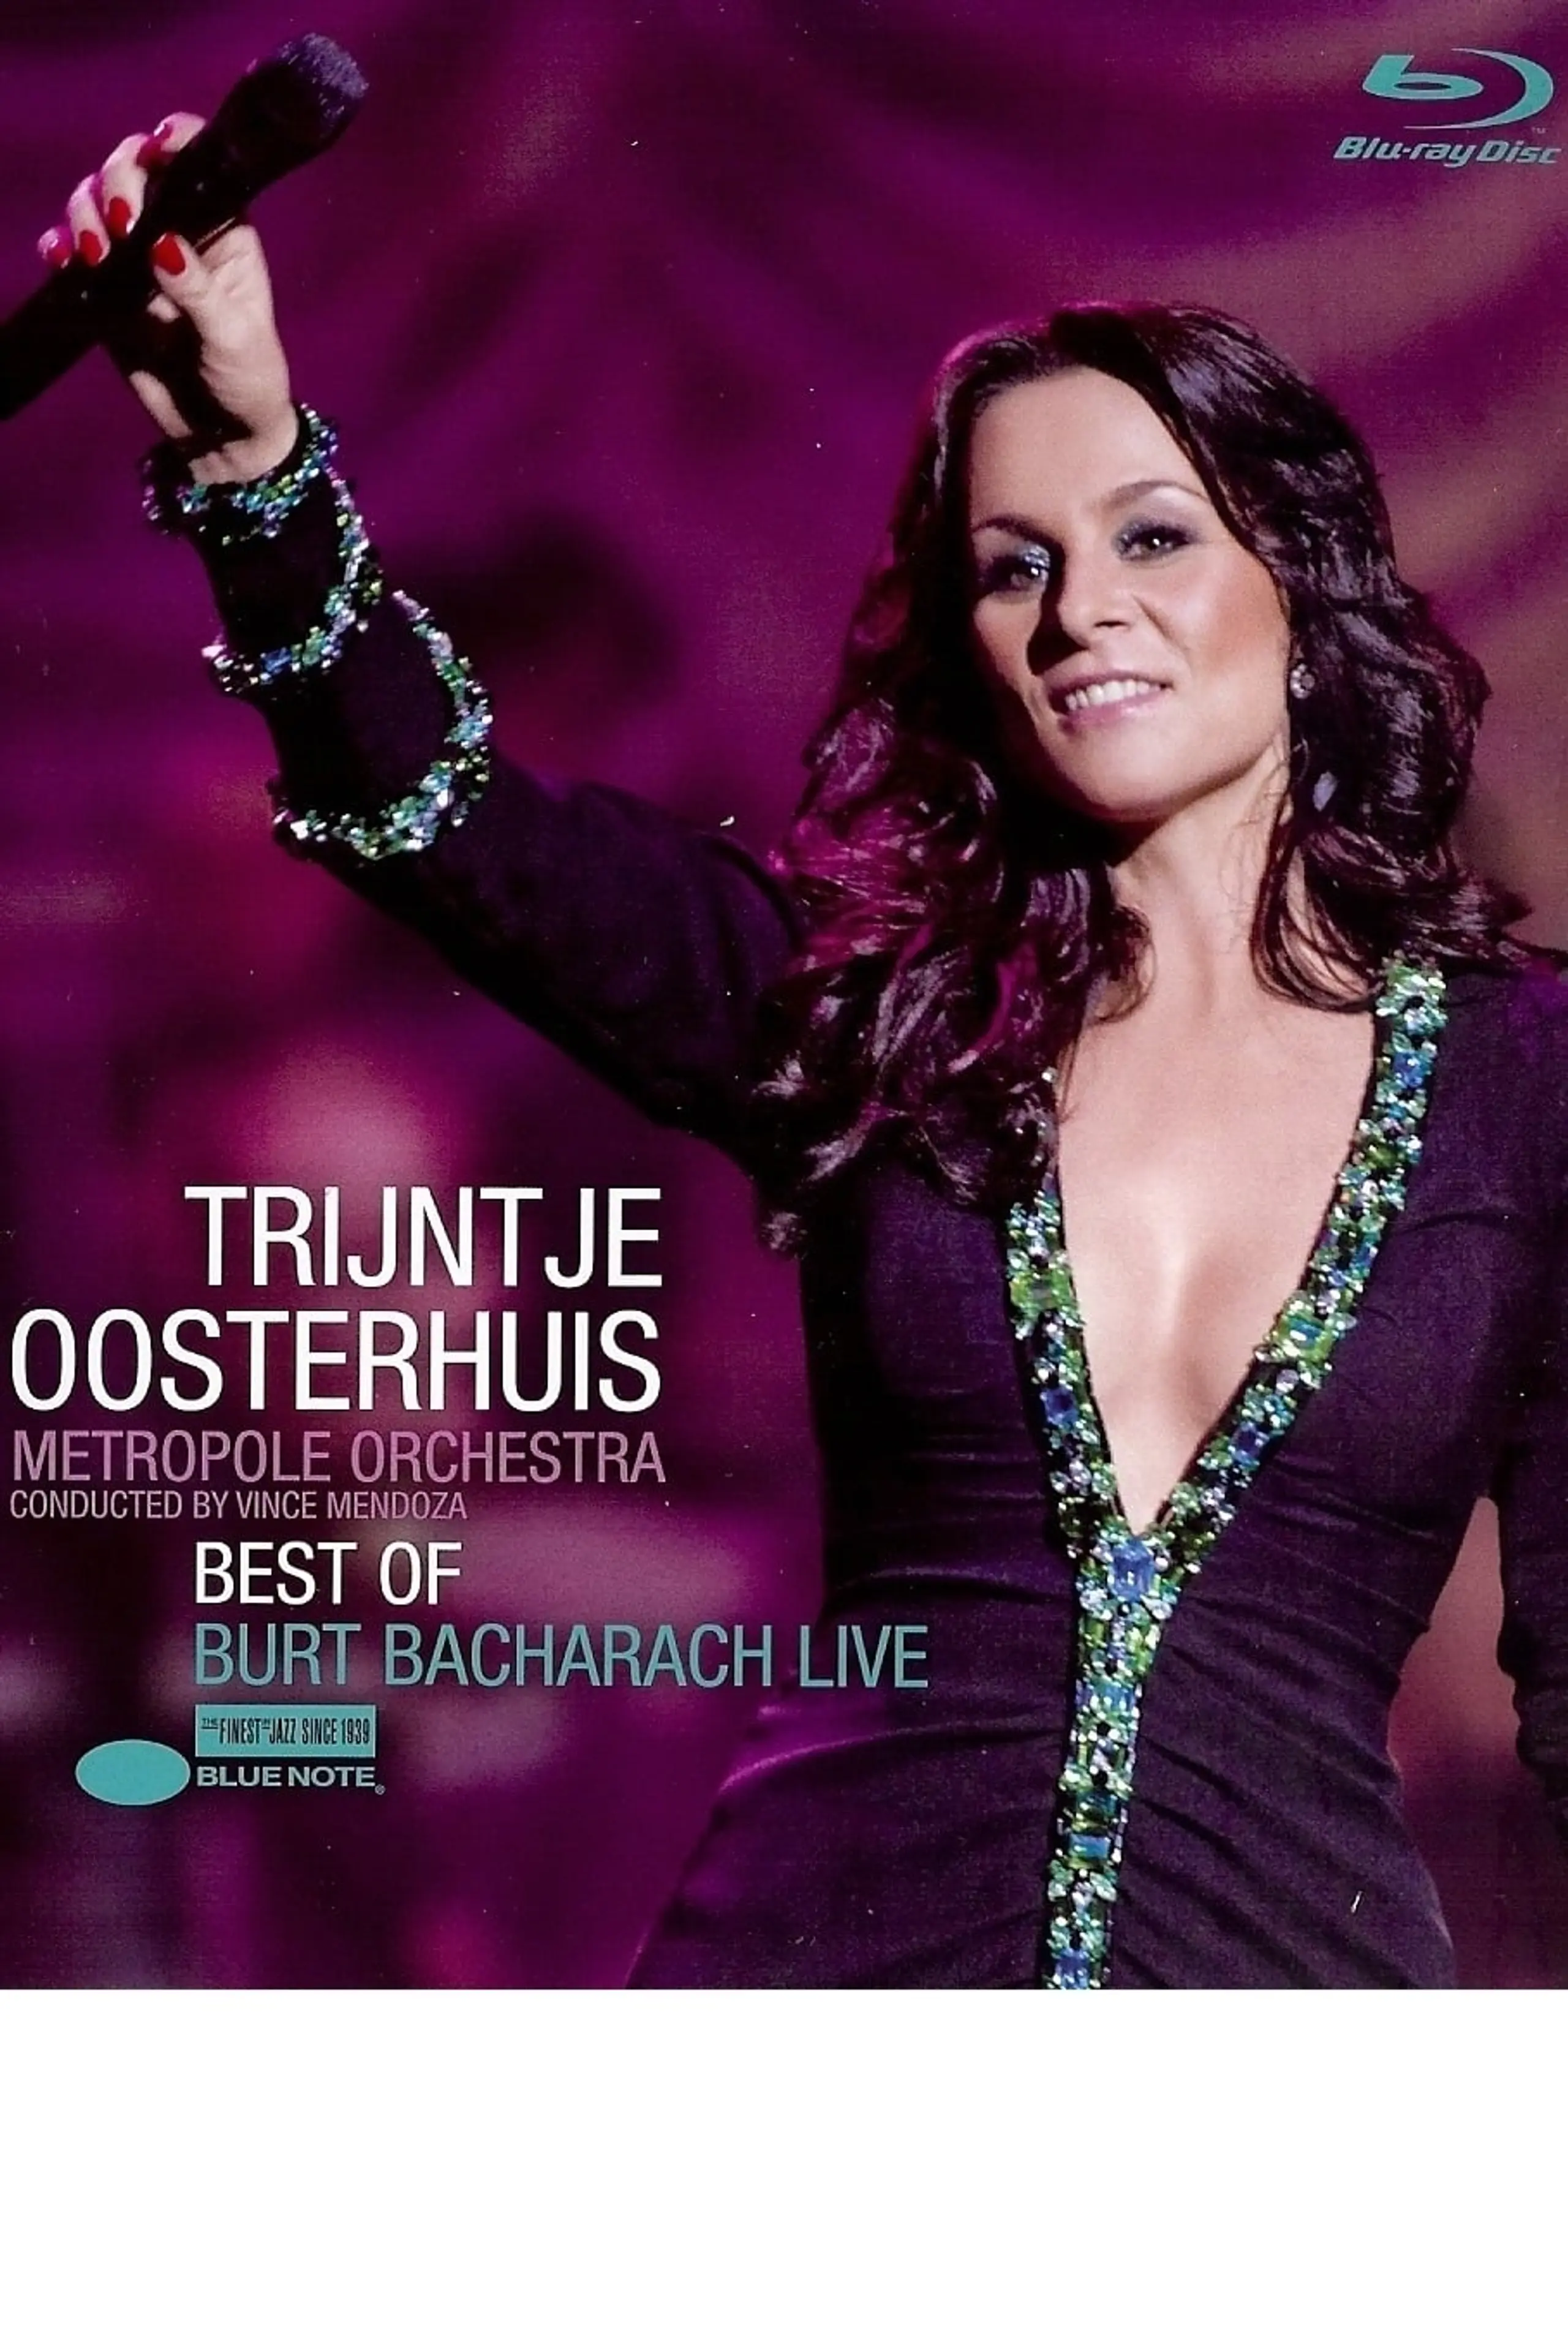 Trijntje Oosterhuis: Best of Burt Bacharach Live